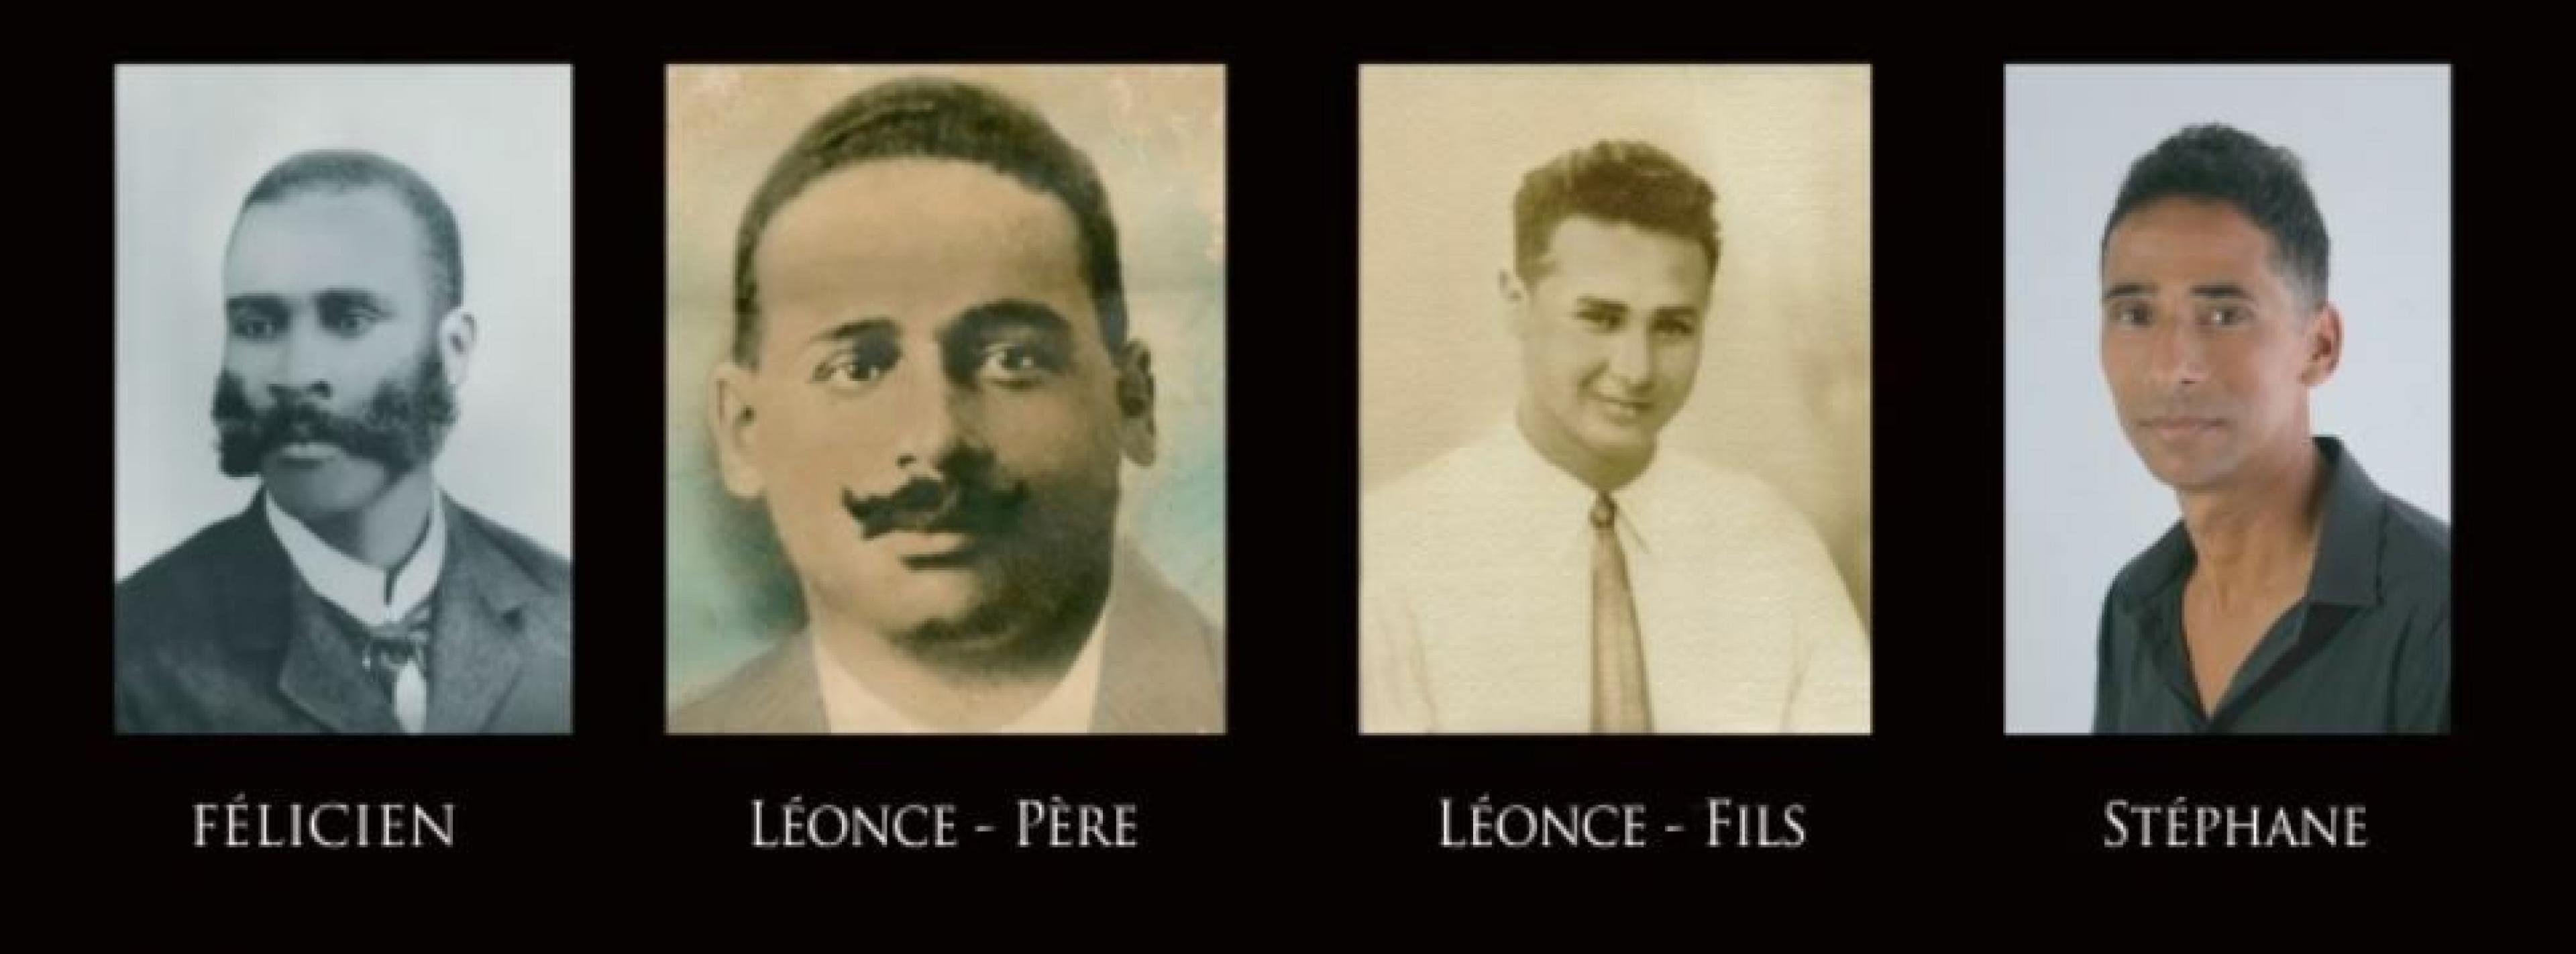 Vier Generationen der Familie Madkaud. Der Gründer des familiären Rum-Betriebes links. Es folgt sein Sohn Léonce, sein Enkel Léonce Junior und rechts sein Urenkel Stéphane, der heute der Geschäftsführer ist.